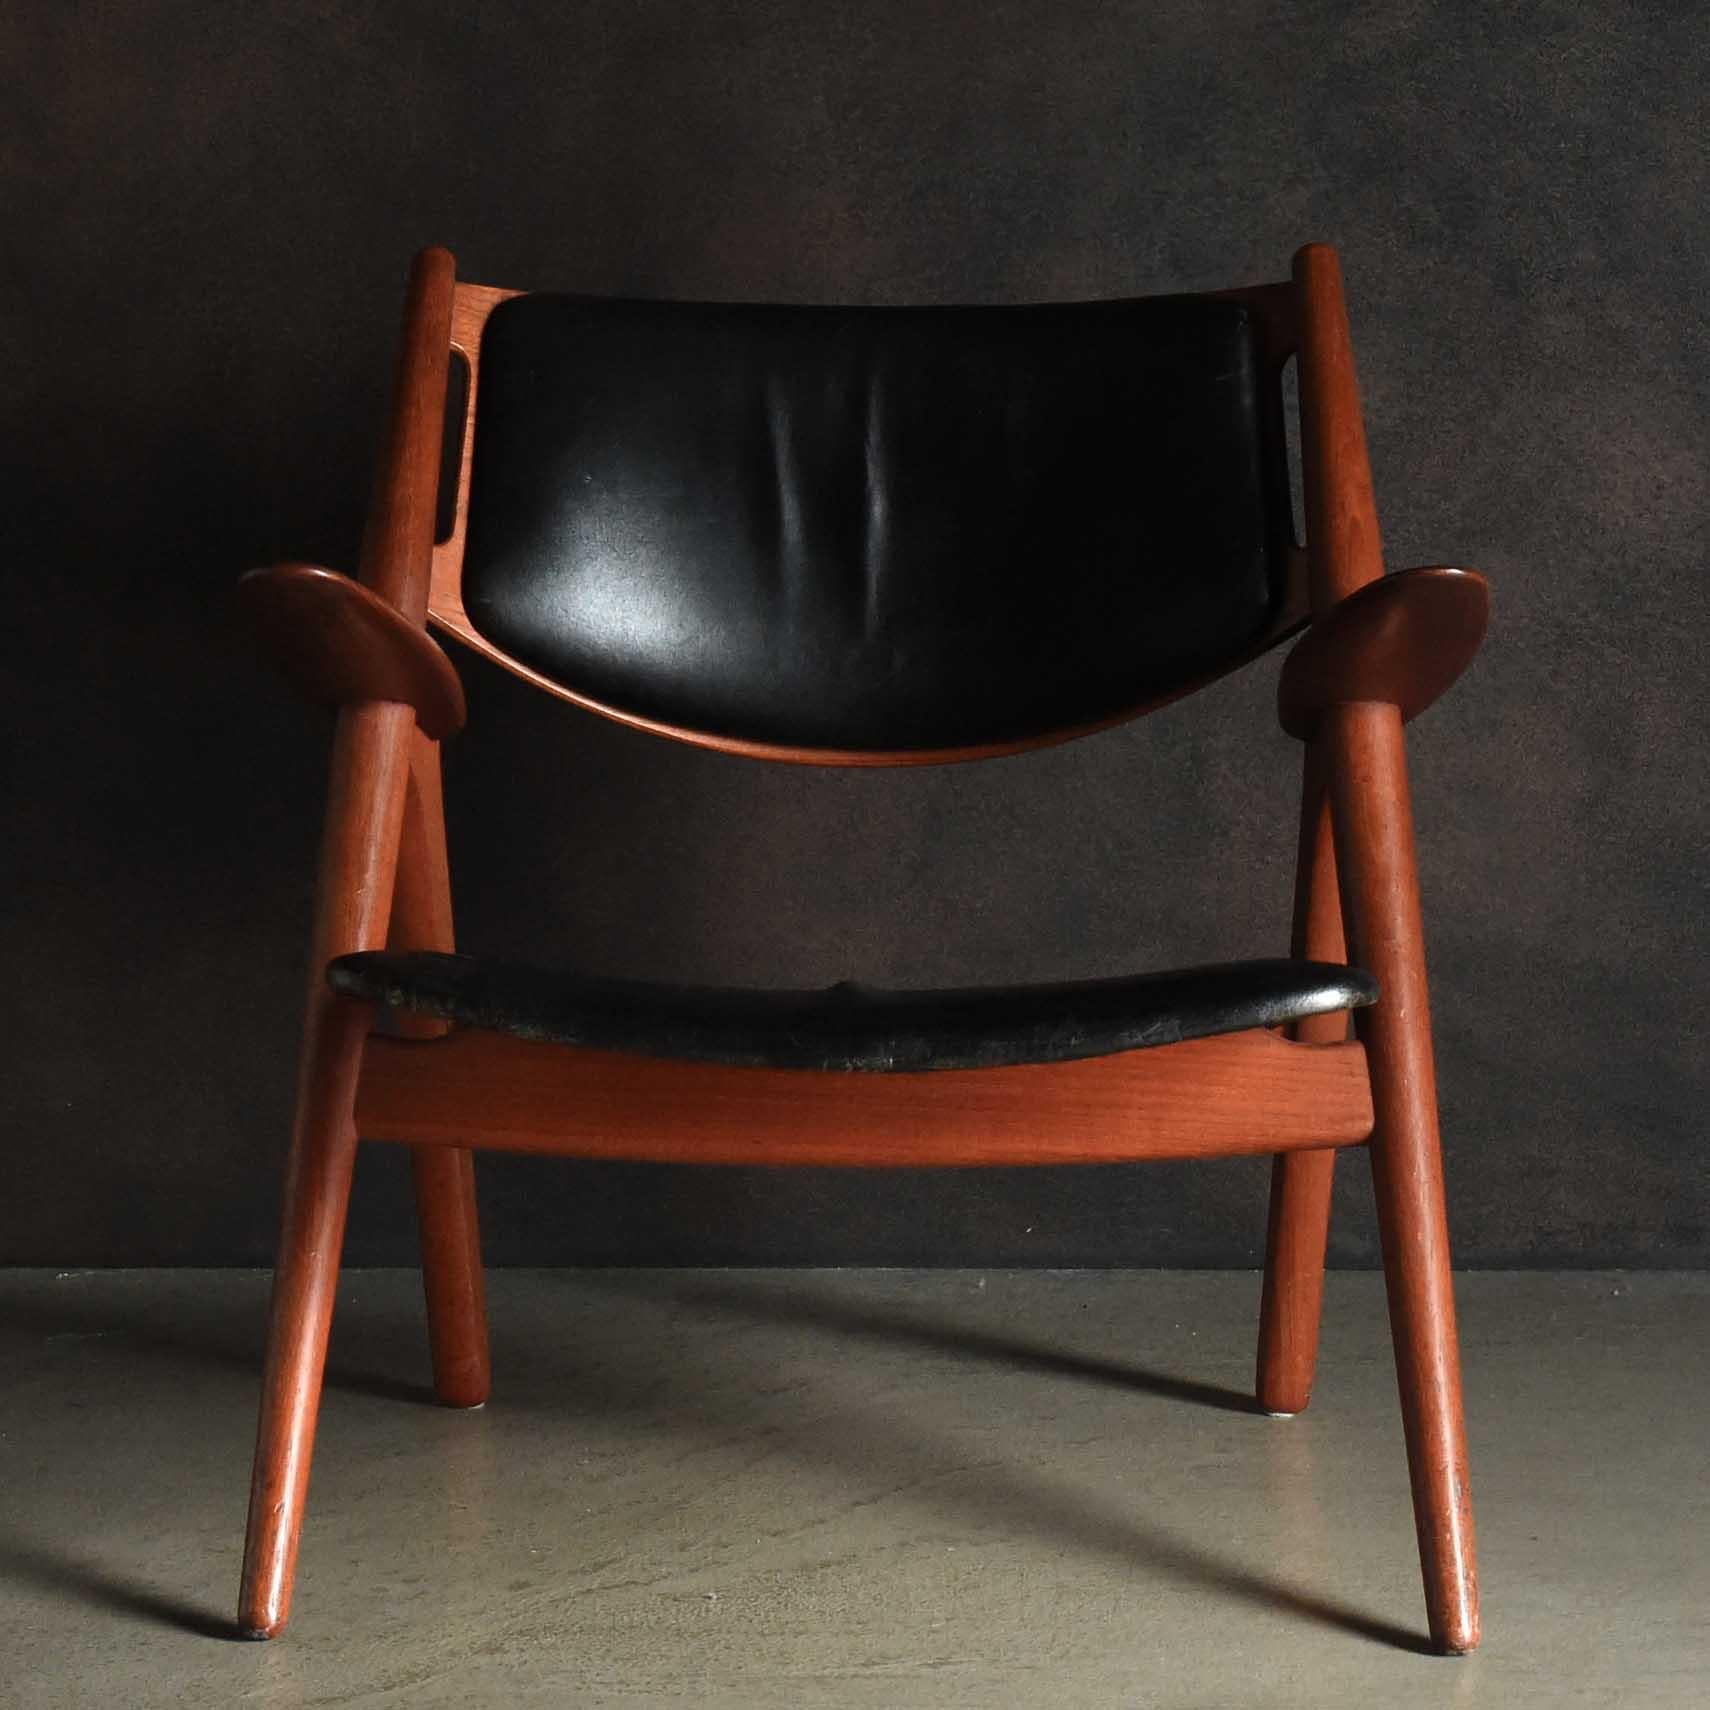 Der CH28 (Sawbuck/Easy Chair) ist ein funktionaler und skulpturaler Entwurf von Hans J. Wegner aus dem Jahr 1952. Dieses beispielhafte Stück verkörpert Wegners Vision von Schönheit und Funktion, die er durch innovative Form und bewusste Liebe zum